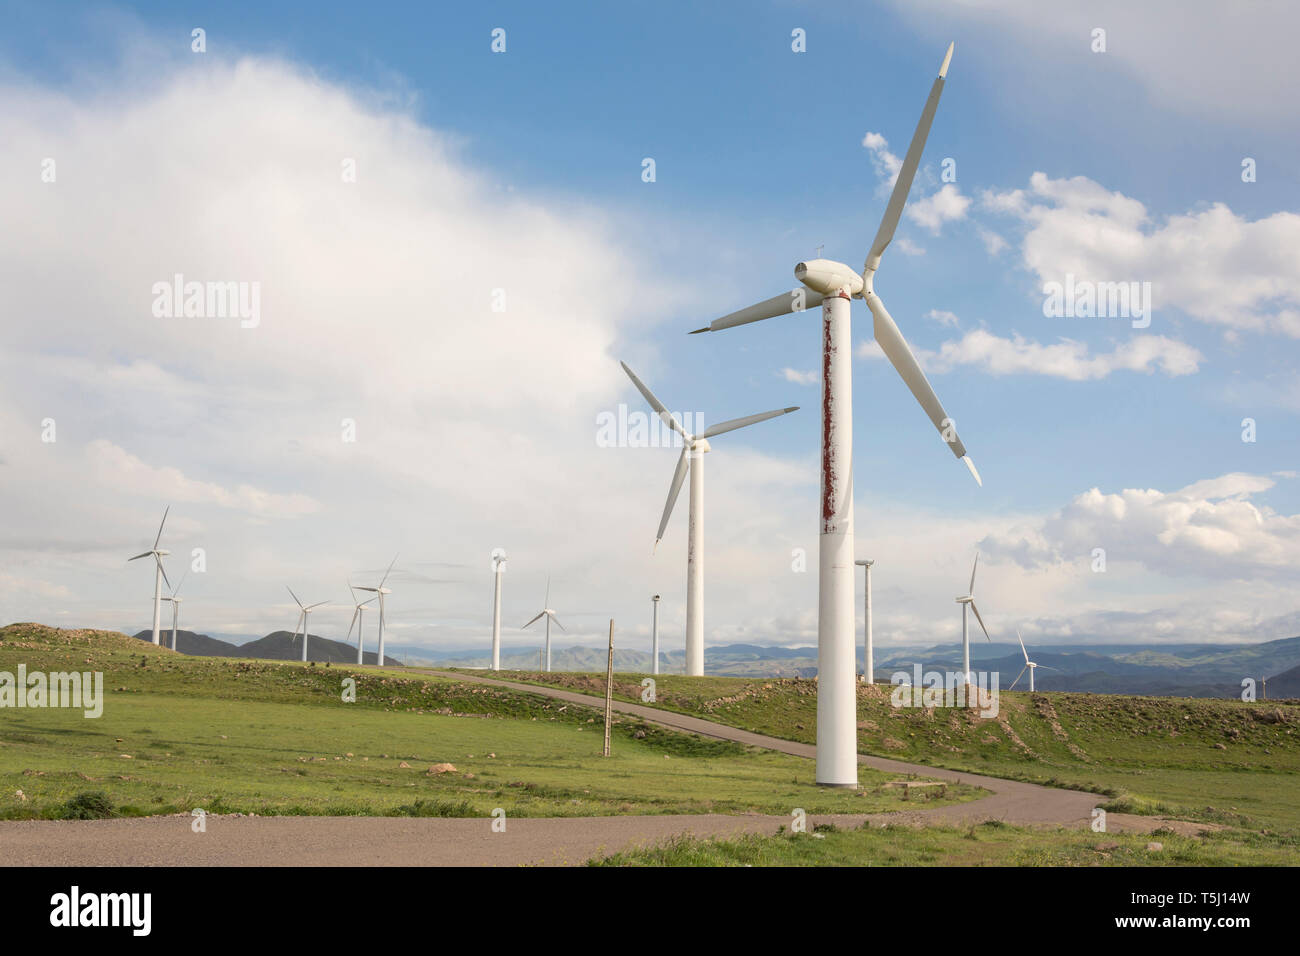 La ferme des moulins à vent modernes, la technologie de production d'énergie, la production d'électricité respectueuse de l'environnement Banque D'Images